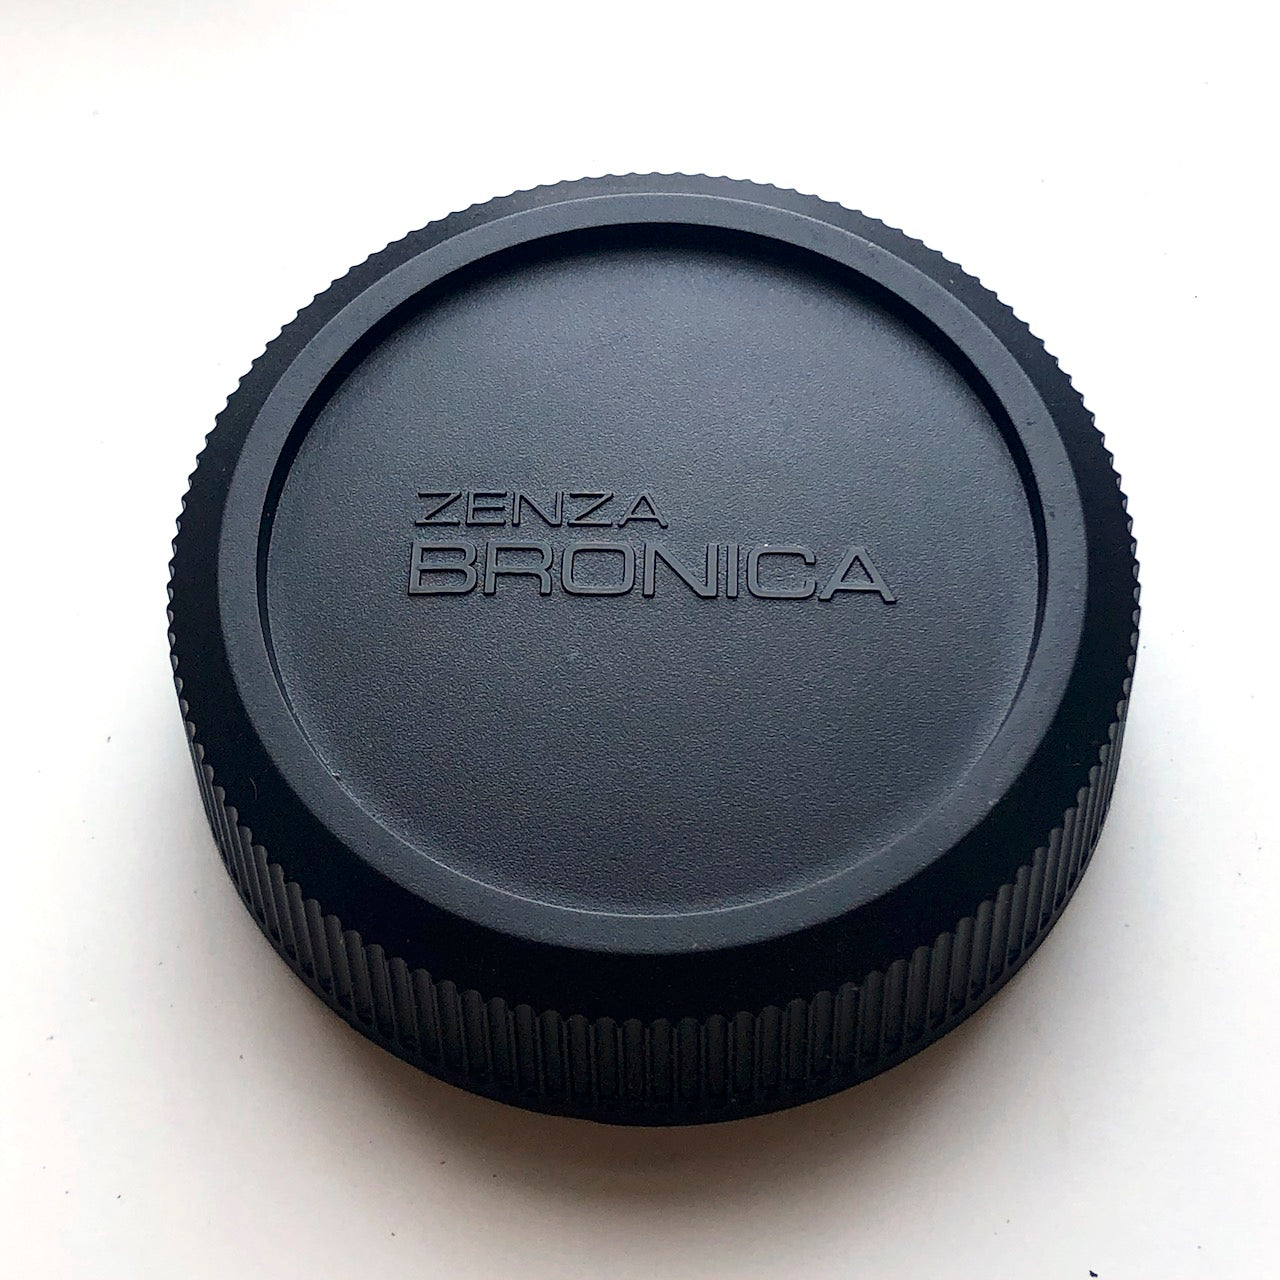 Bronica SQ rear lens cap